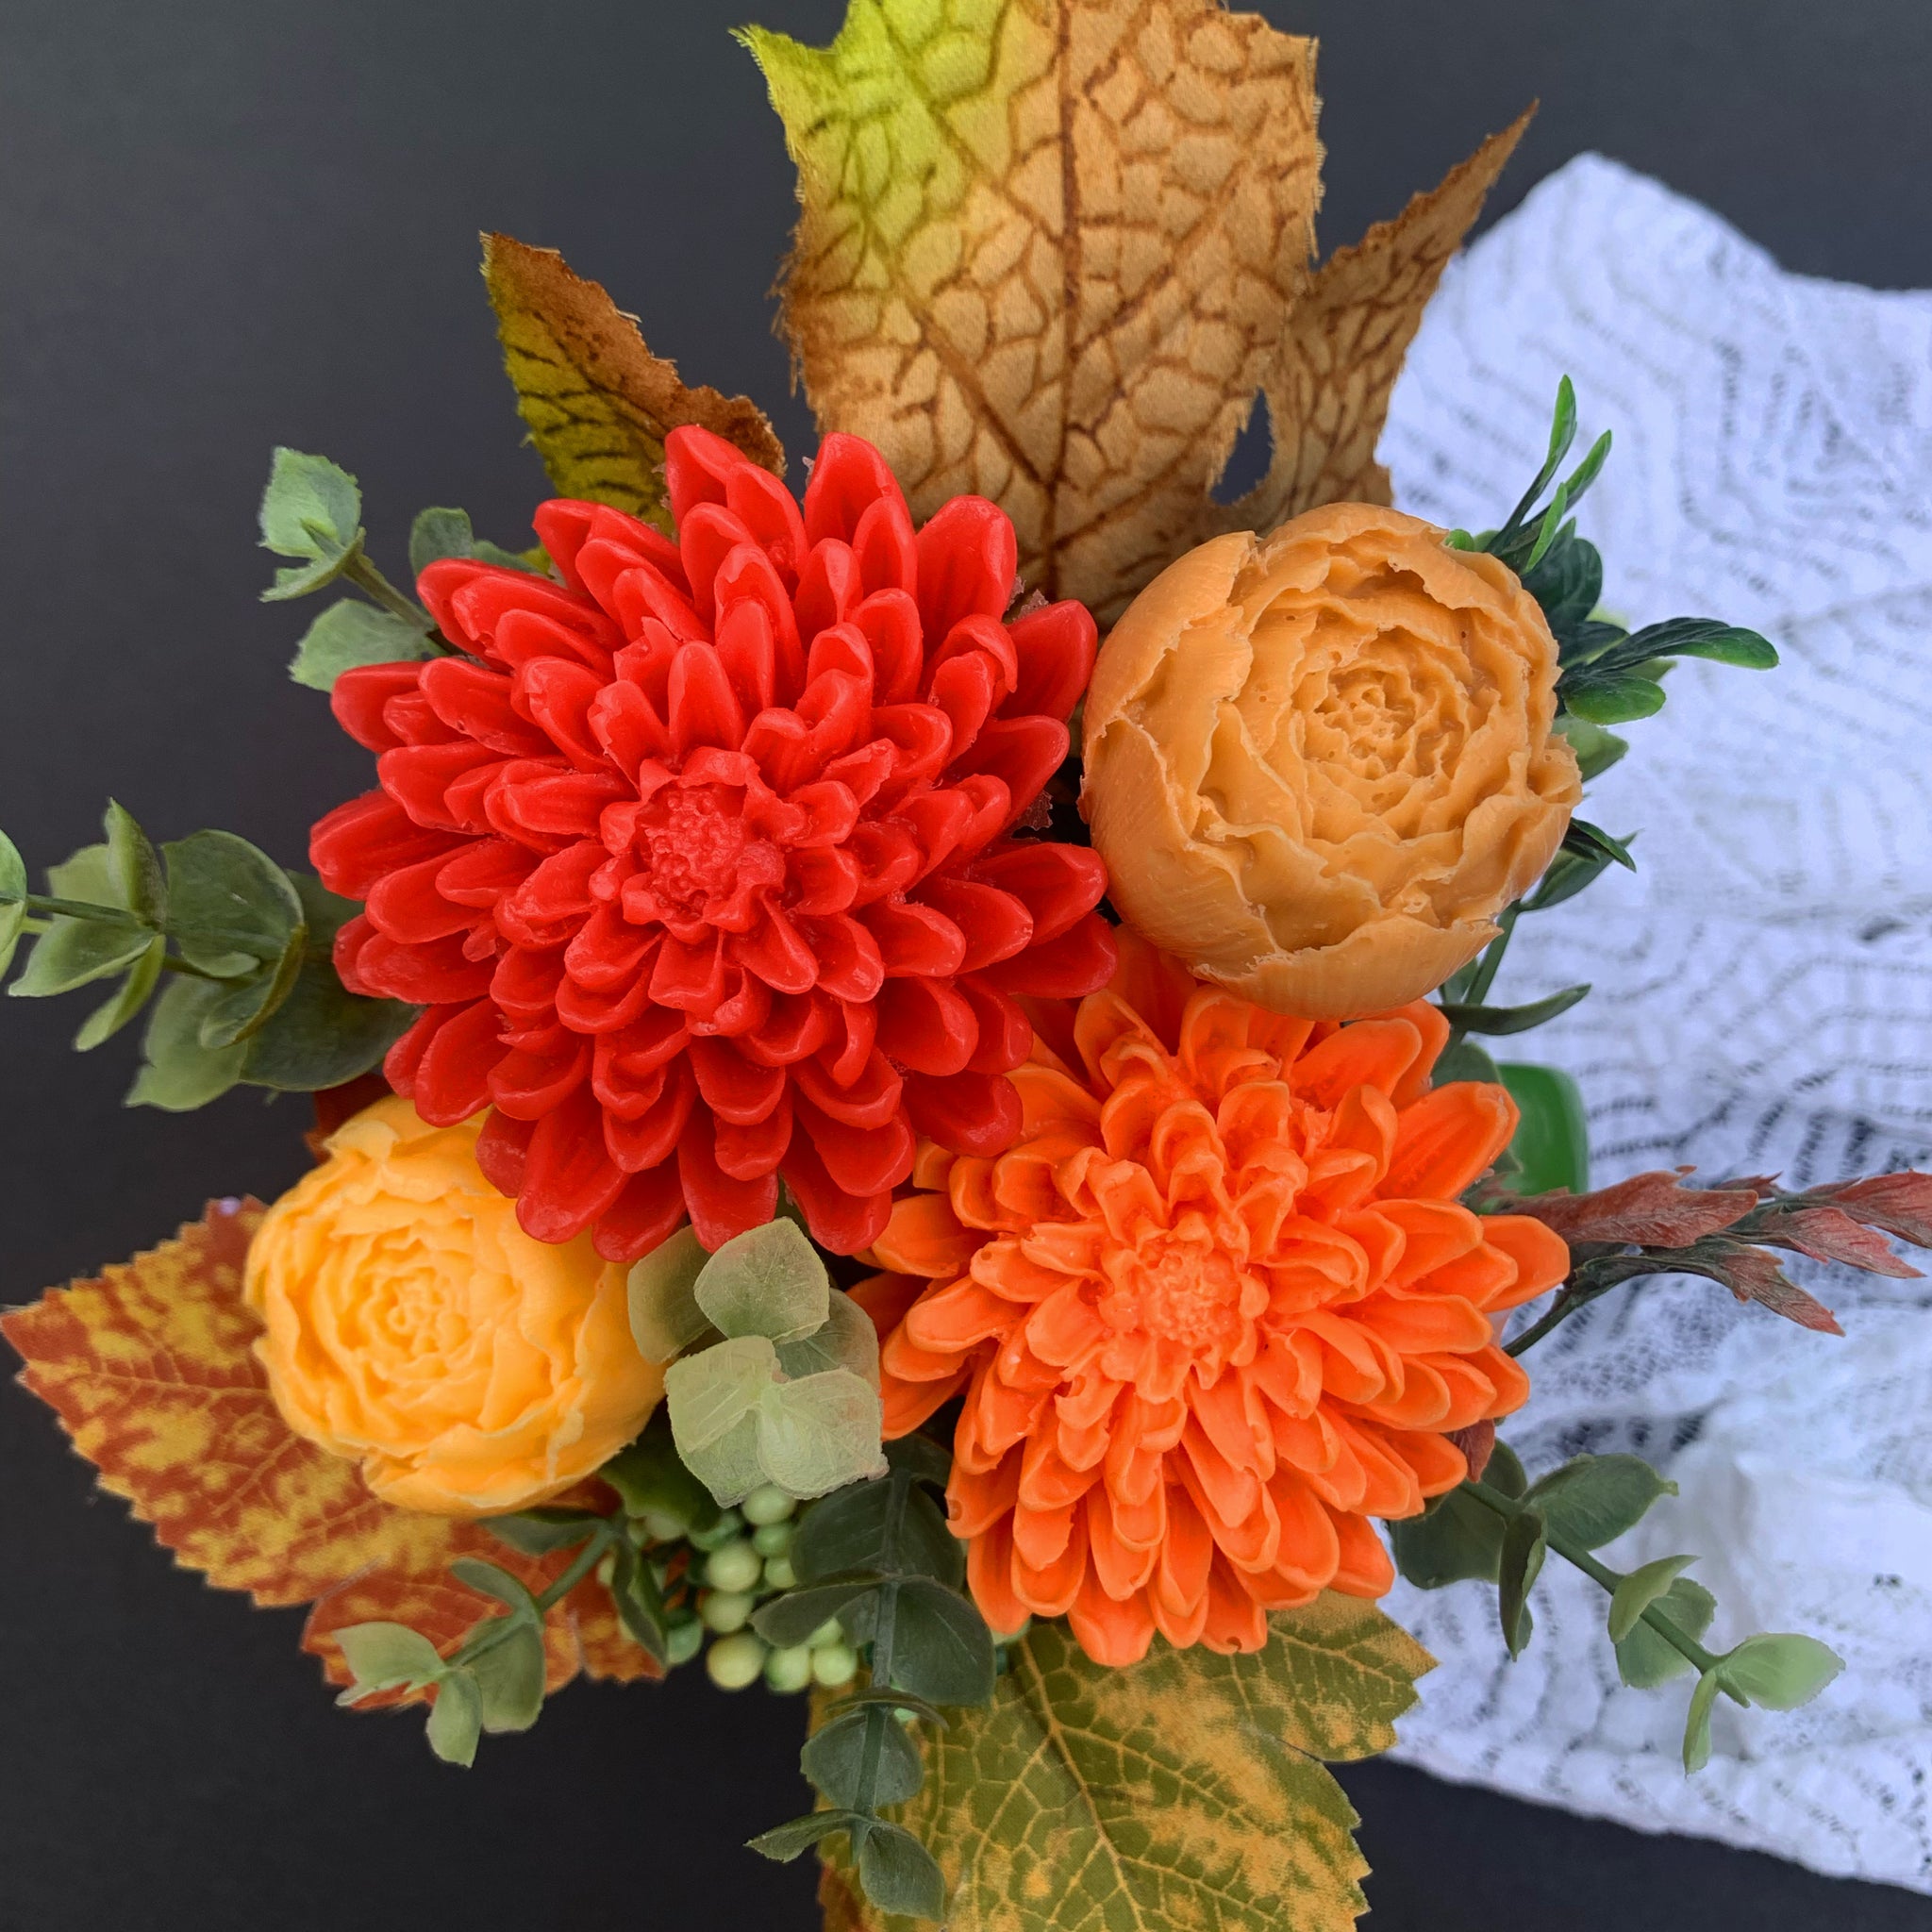 September Leafs Soap flowers Fall Arrangement, Thanksgiving floral centerpiece